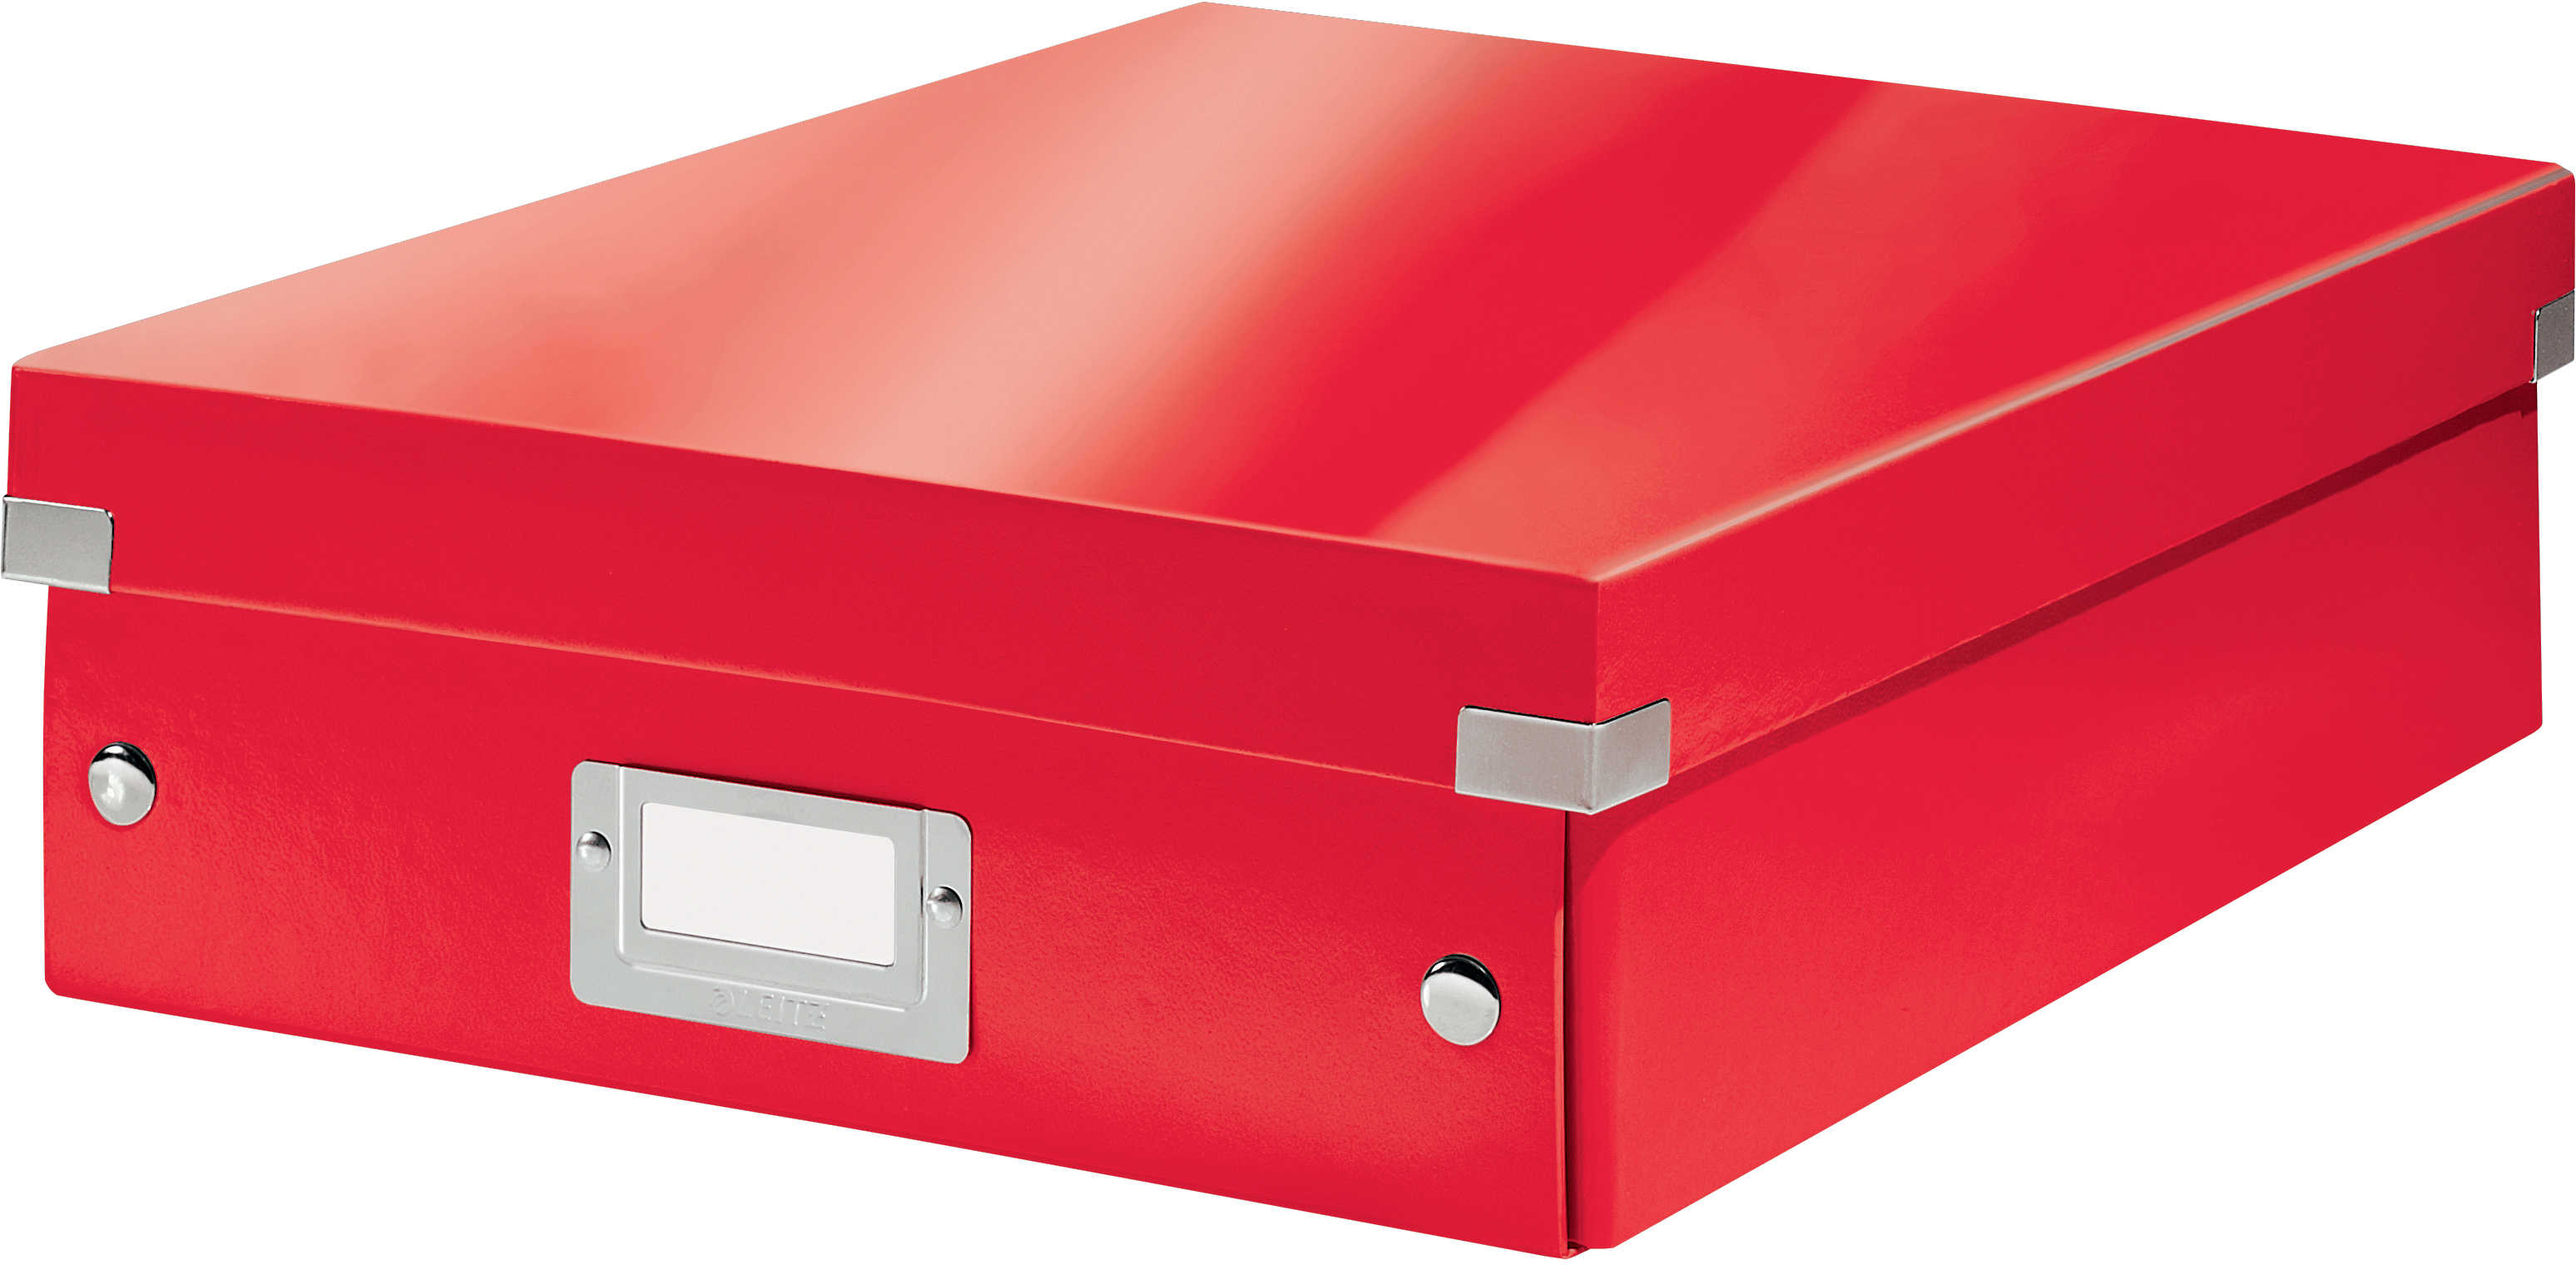 LEITZ Click&Store WOW Org.box M 6058-00-26 rouge 28.1x10x37cm rouge 28.1x10x37cm